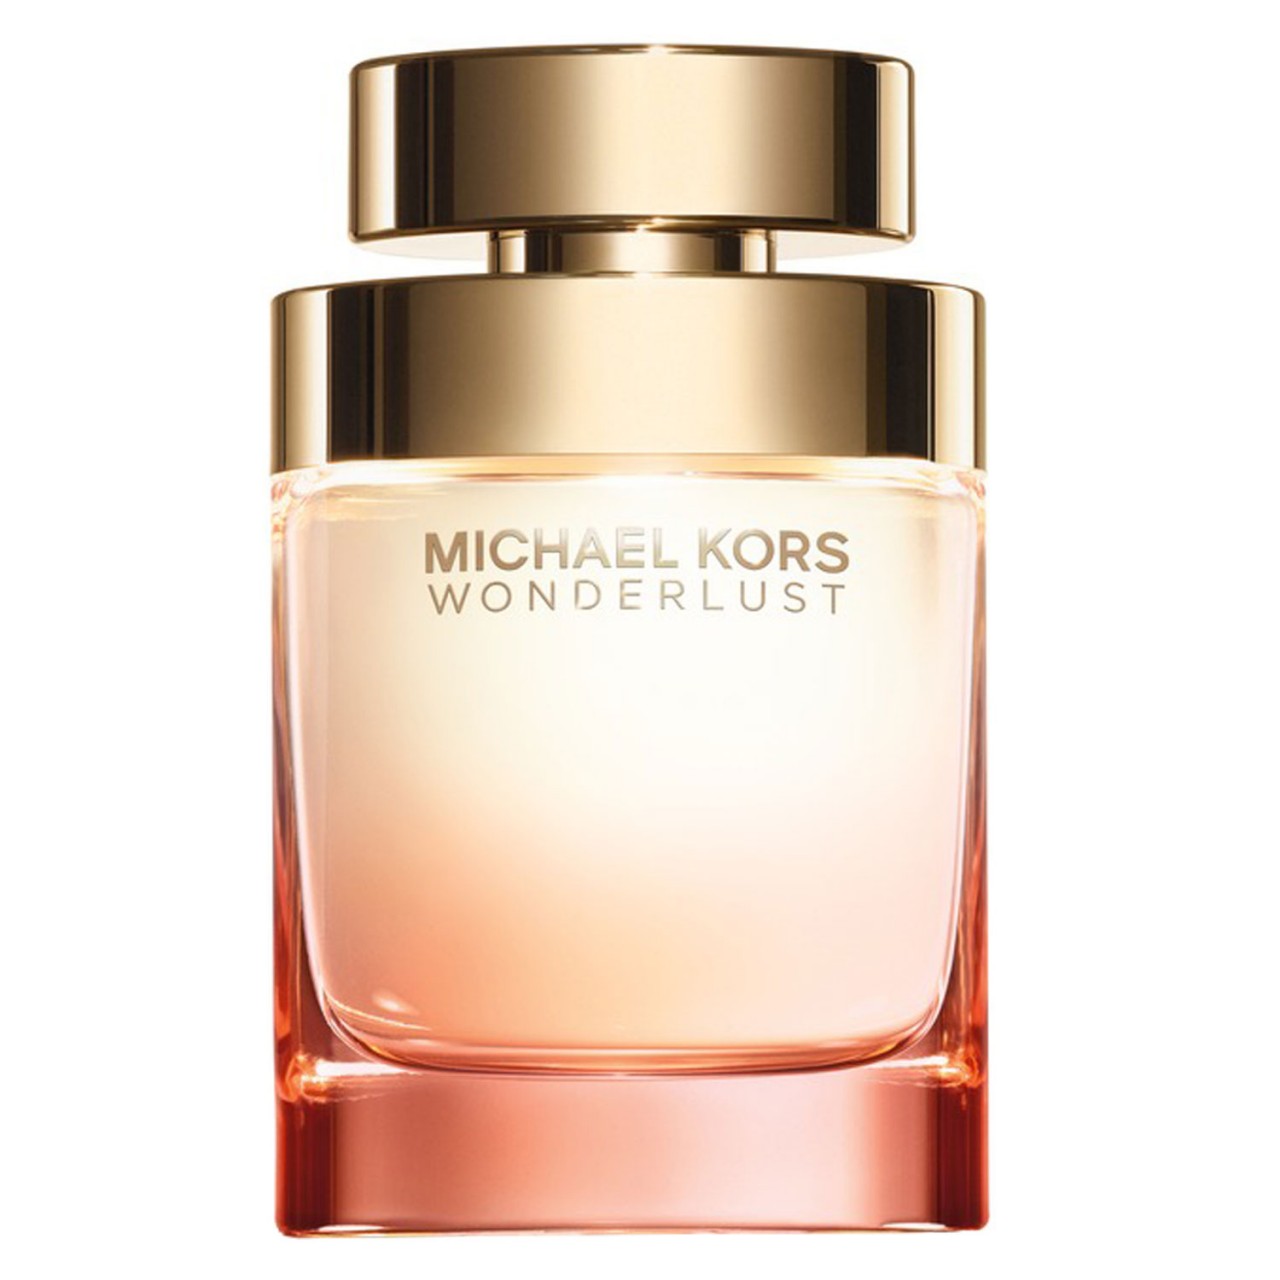 Wonderlust - Eau de Parfum von Michael Kors